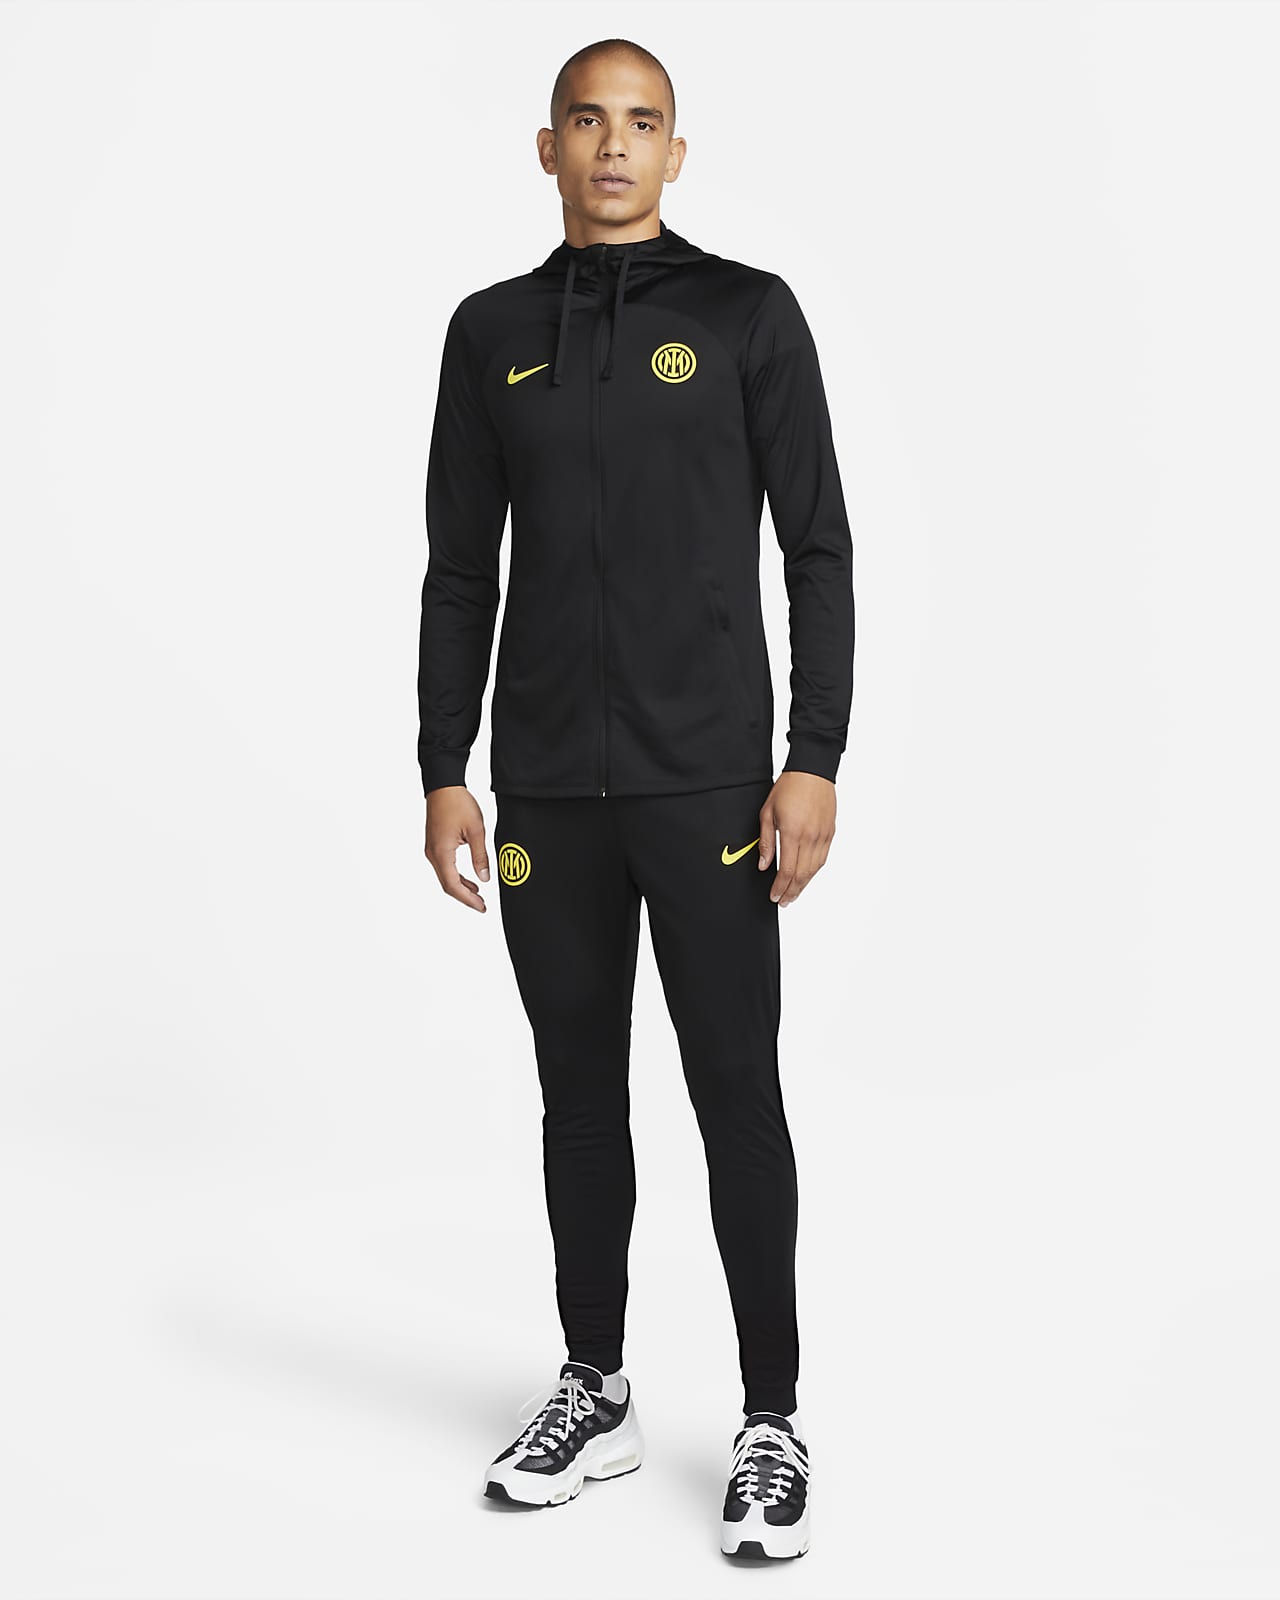 Inter Mailand Strike Nike Dri-FIT Fußball-Trainingsanzug mit Kapuze für Herren